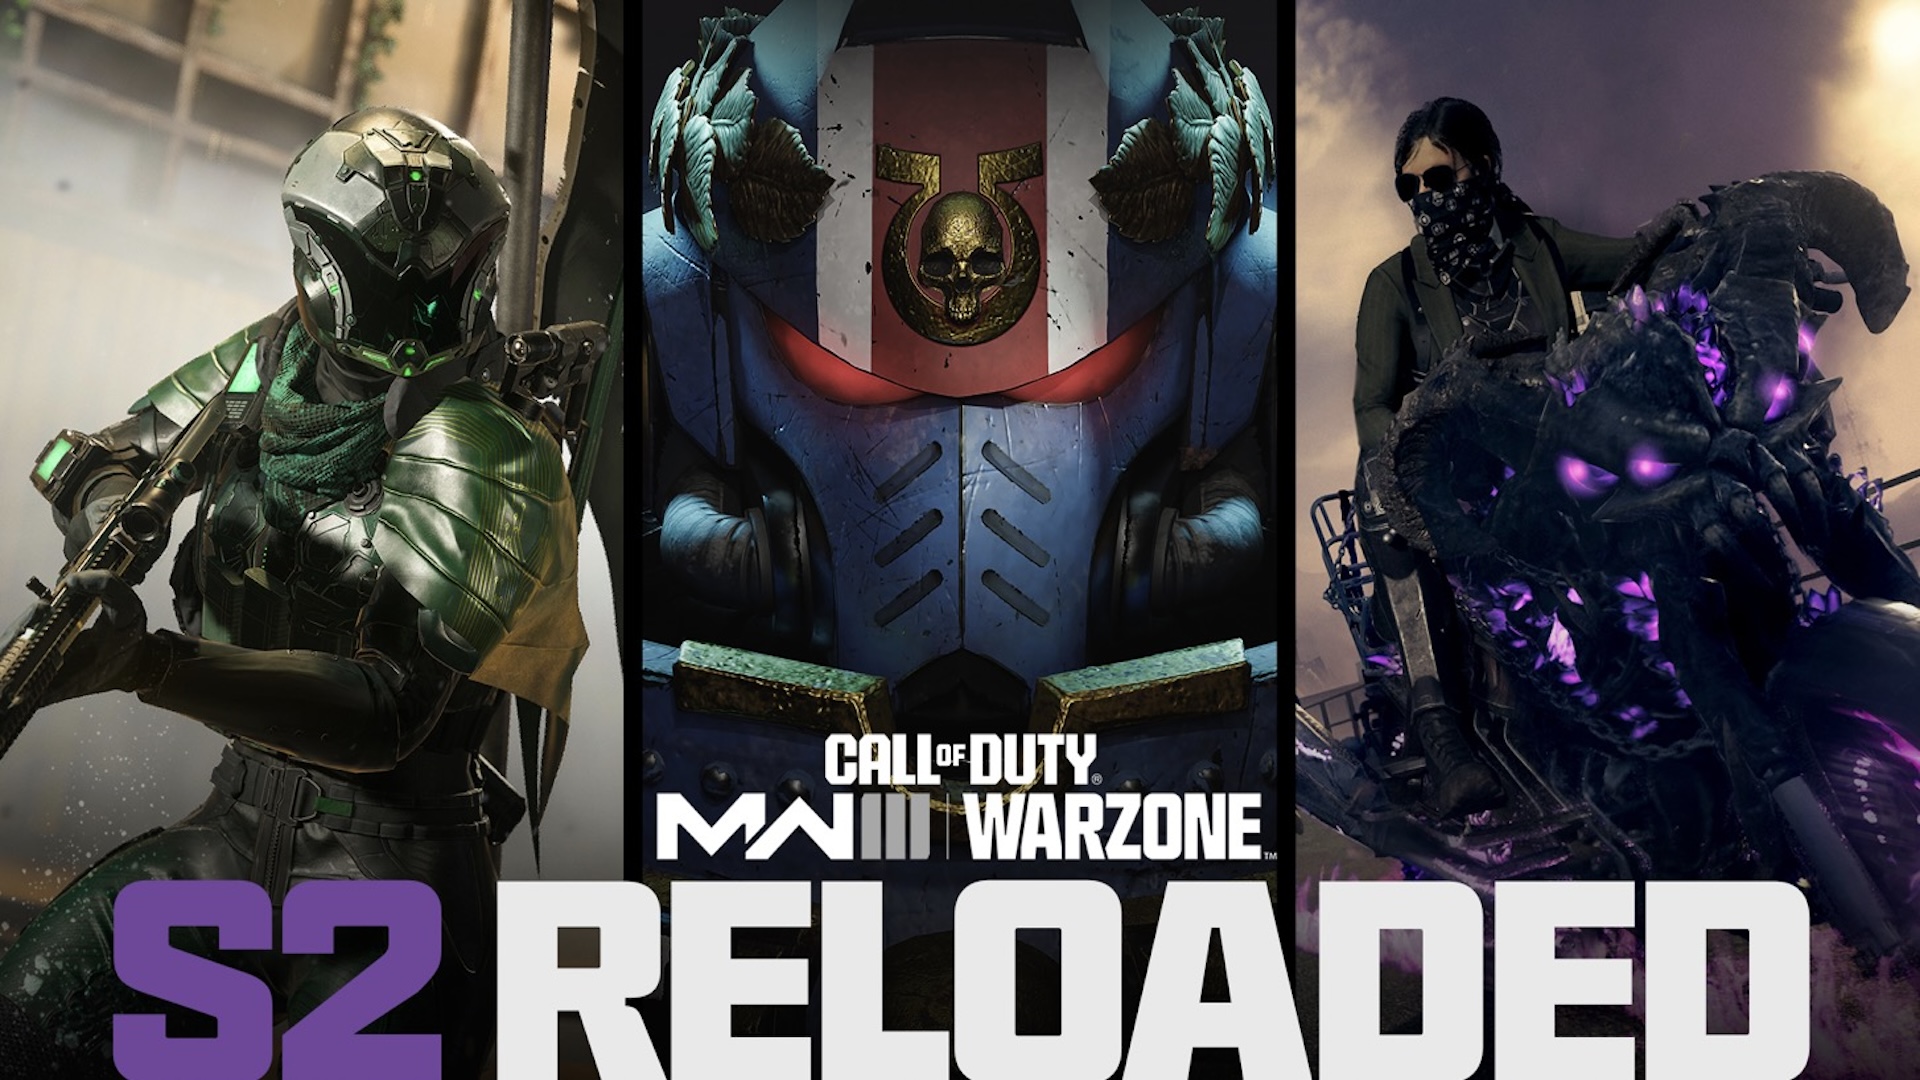 Imagen promocional de Modern Warfare 3 Temporada 2 Reloaded.  Mostrando el personaje de Warhammer 40K junto a los operadores de Call of Duty